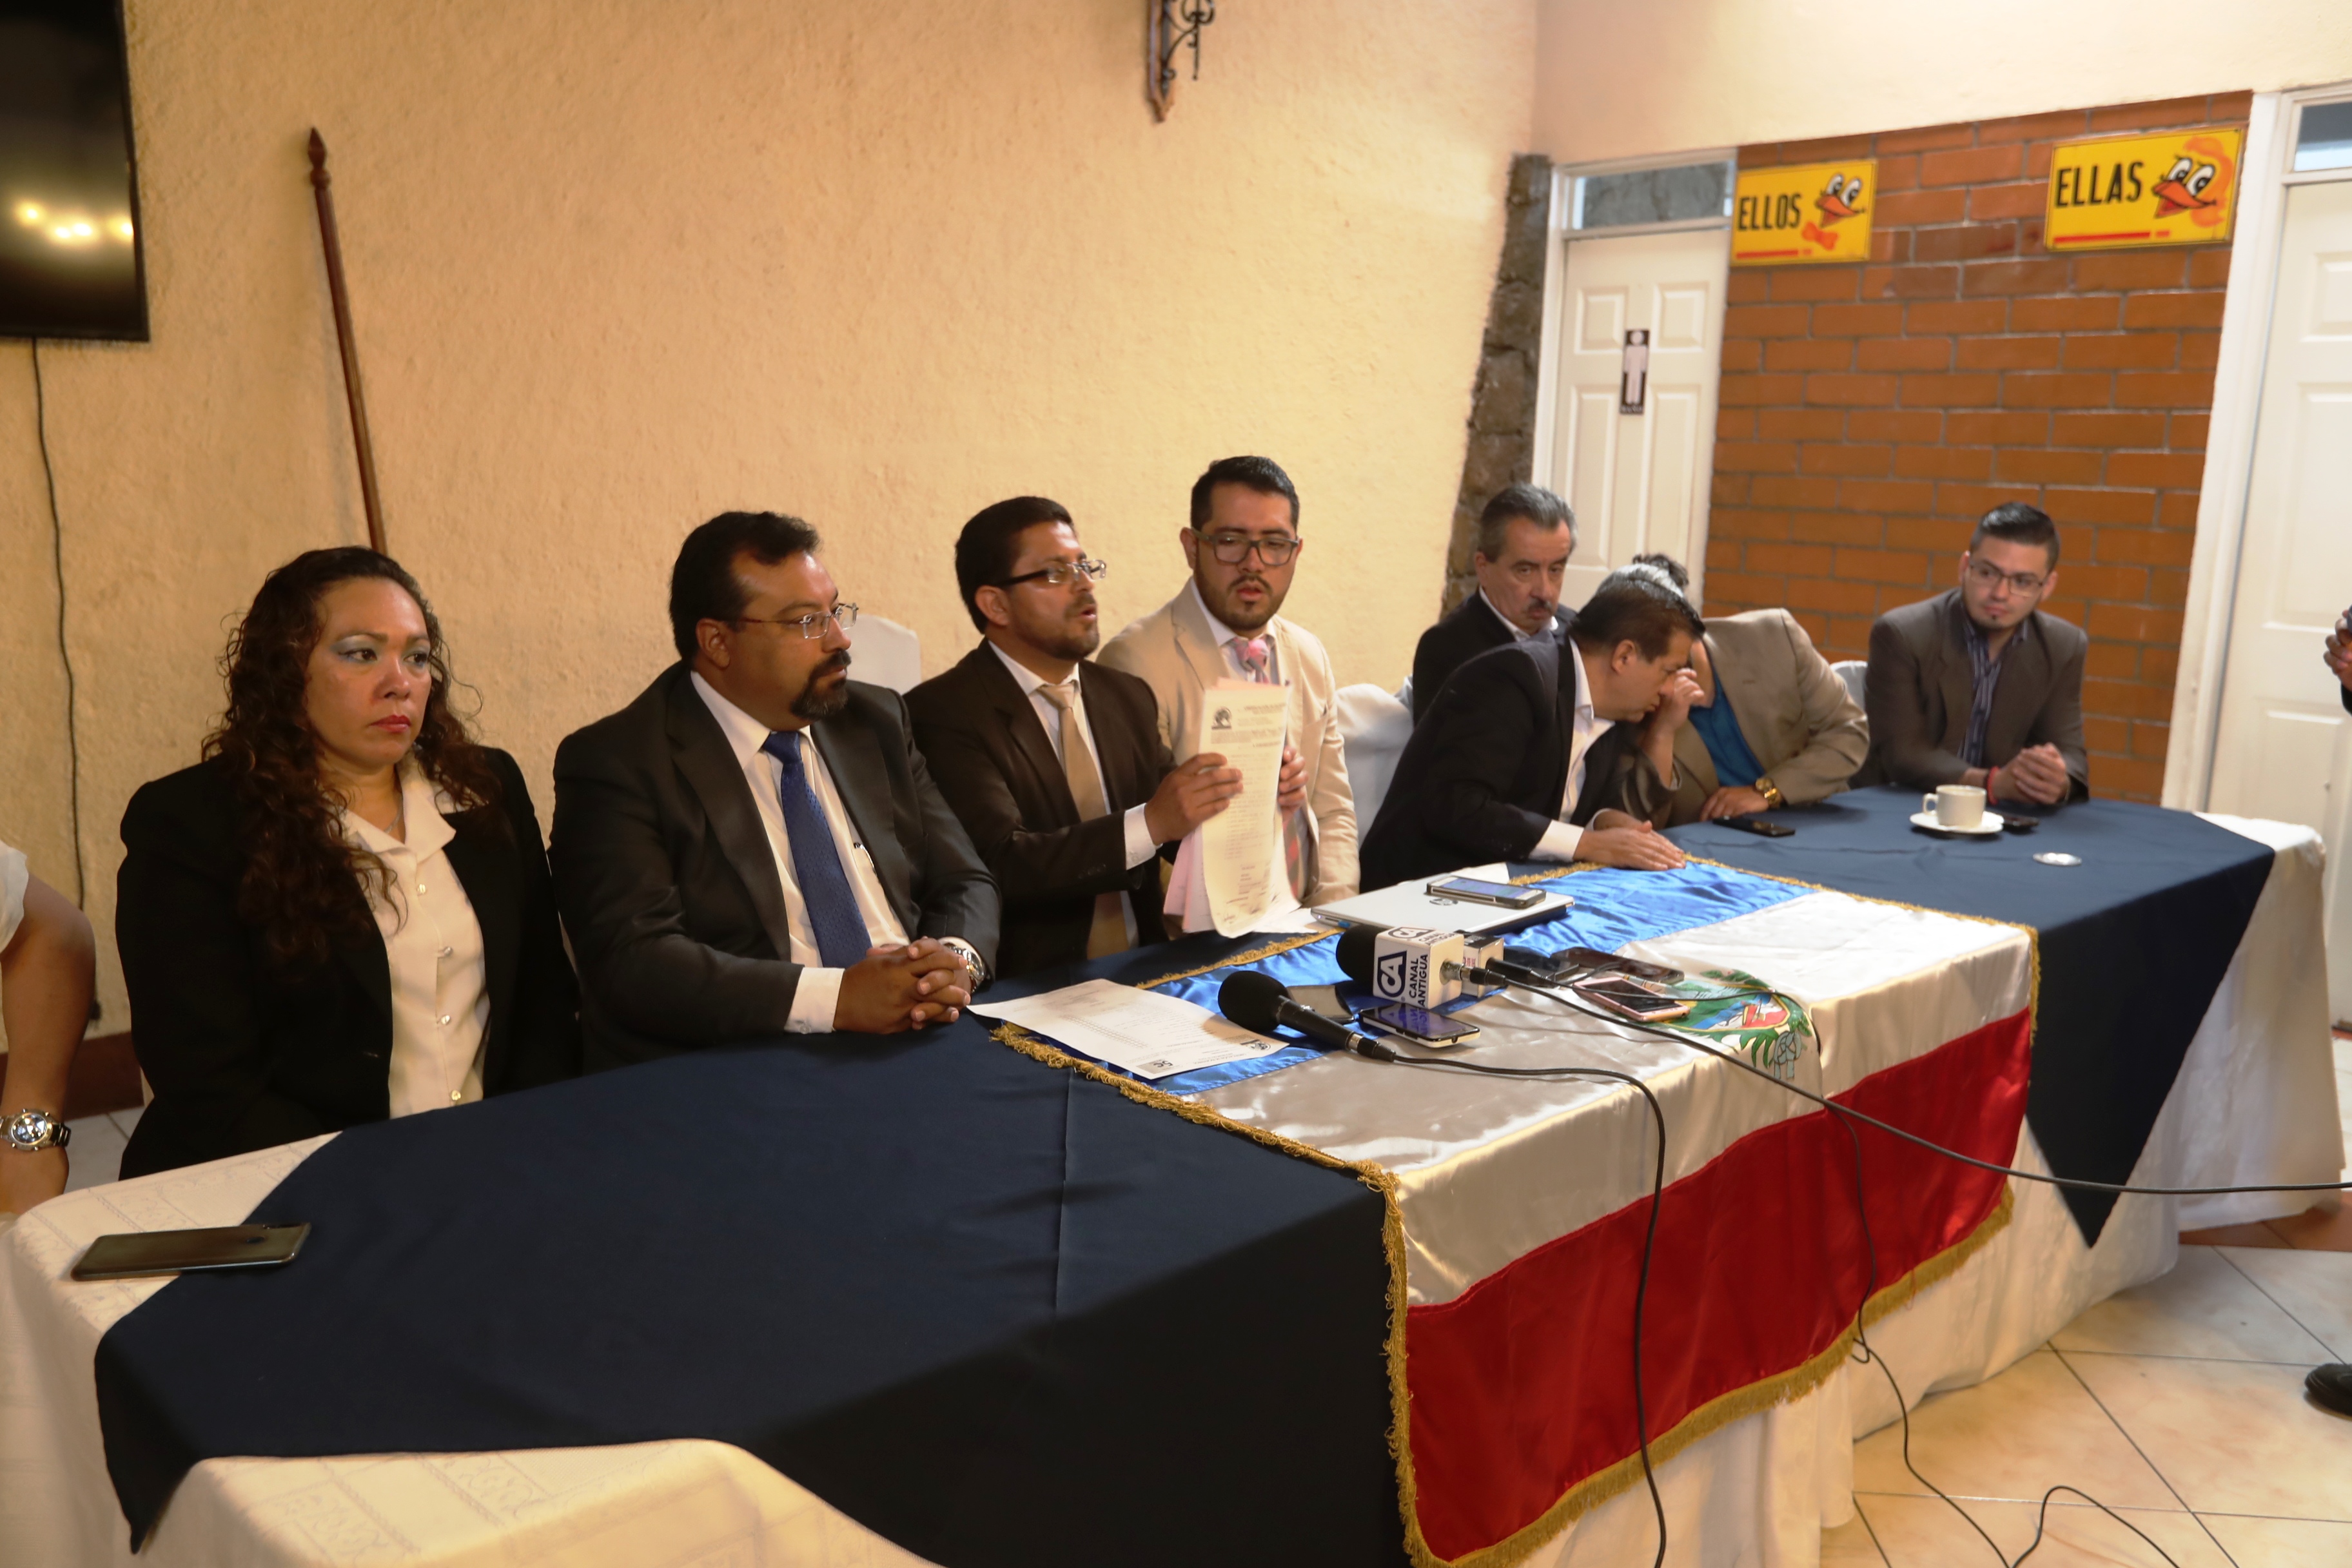 Quince excandidatos a la alcaldía de Quetzaltenango exigen al Tribunal Supremo Electoral anular el proceso de elección en Xela. (Foto Prensa Libre: Mynor Toc)